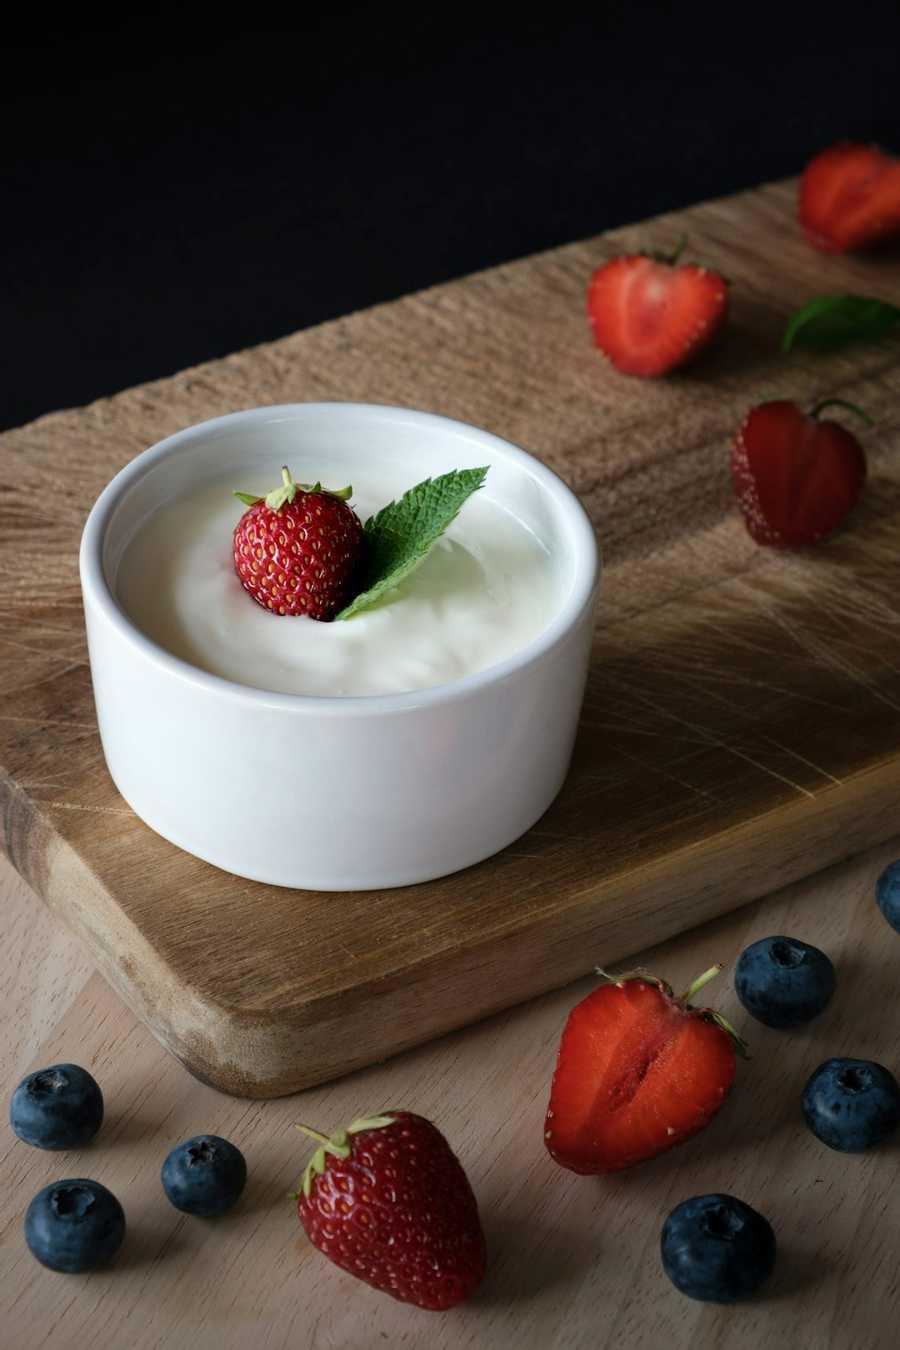 6. Yogurt for probiotics 